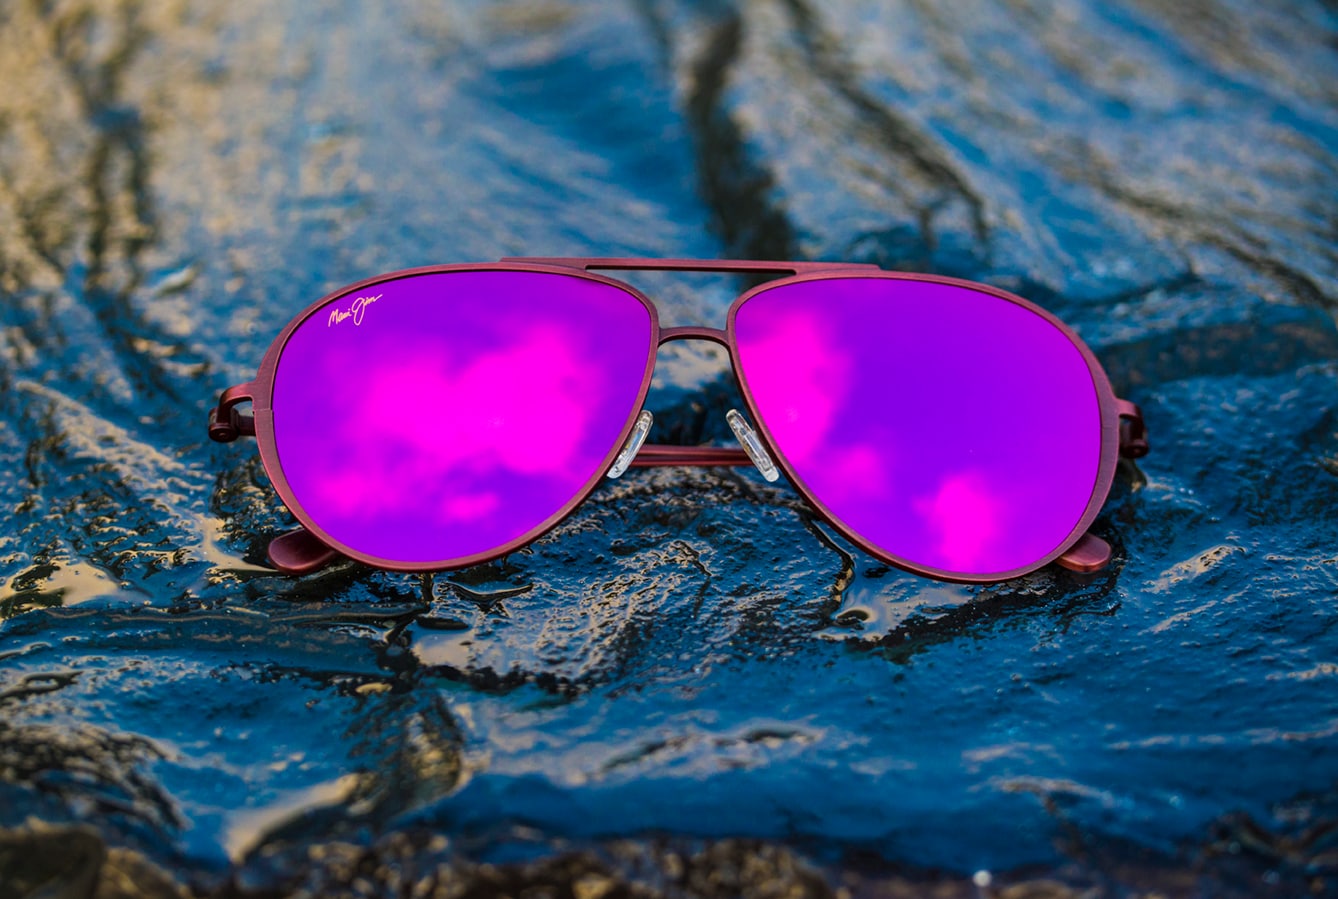 modèle de lunettes de soleil shallows avec verres roses présenté sur roches mouillées